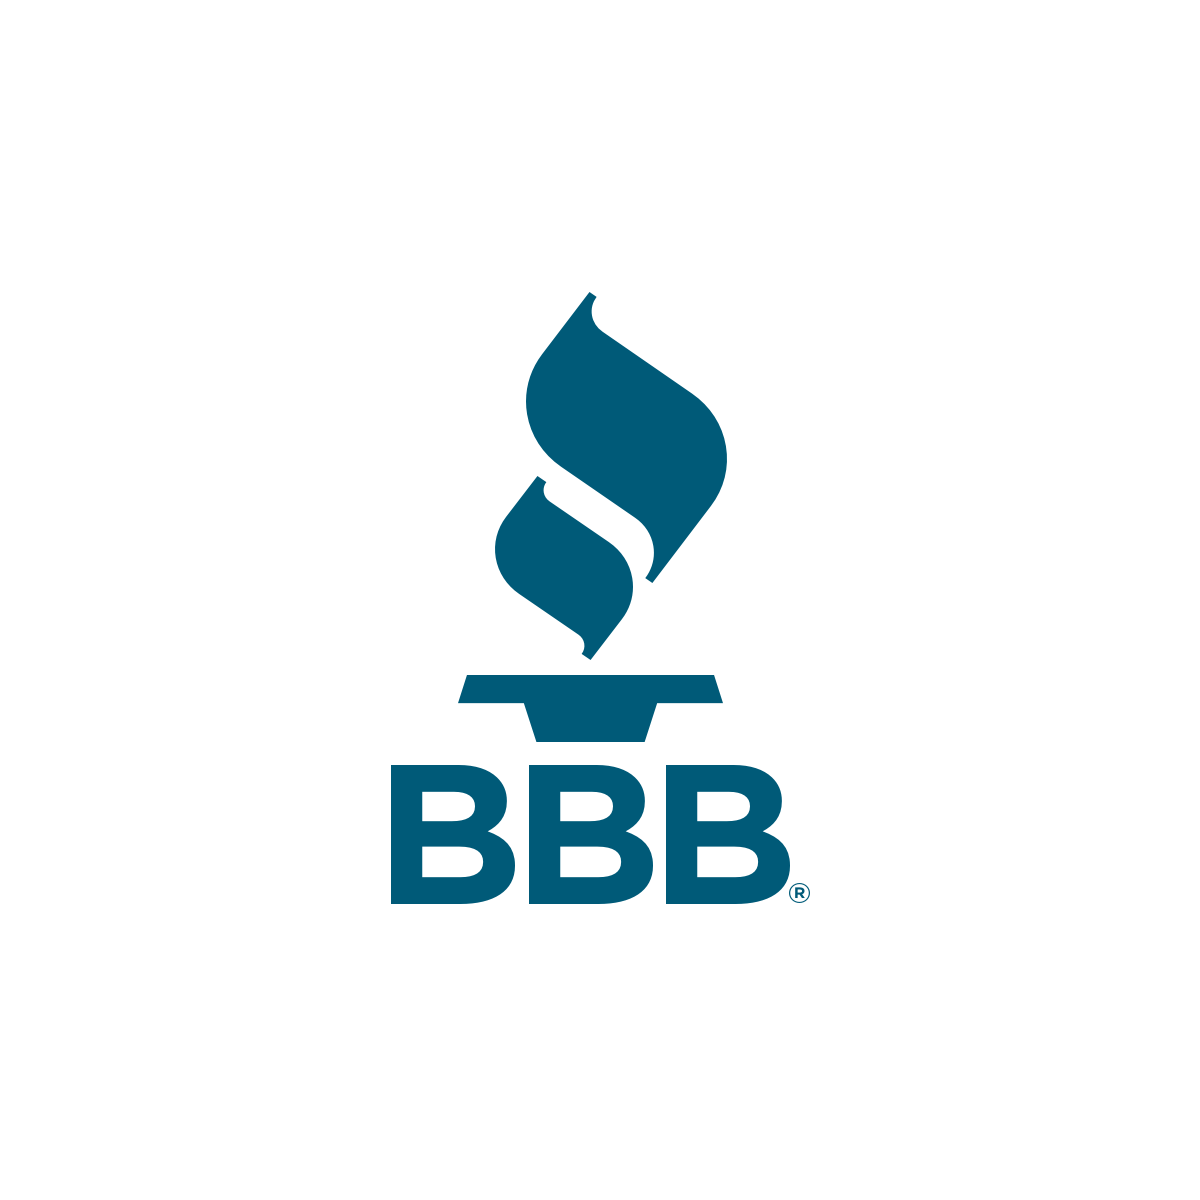 bbb.org logo